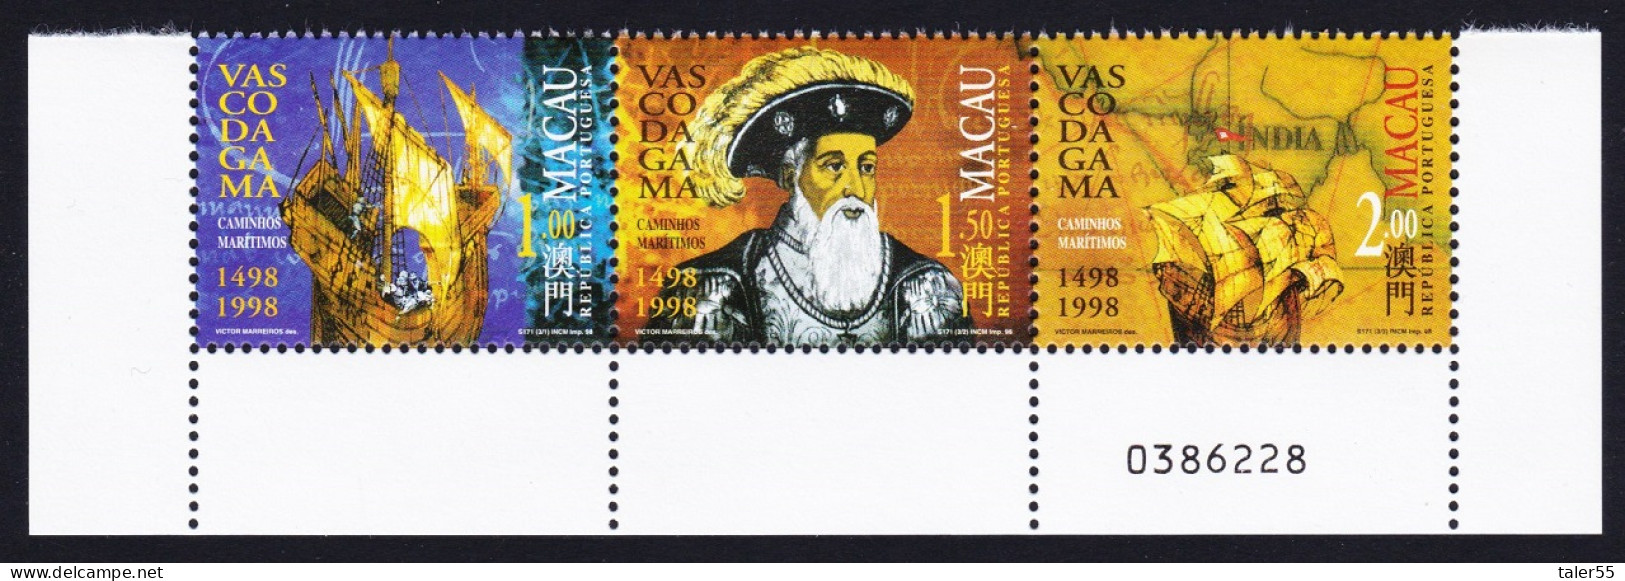 Macao Macau Vasco Da Gama 1498 Strip Of 3v Control Number 1998 MNH SG#1044-1046 Sc#943-946 - Ungebraucht